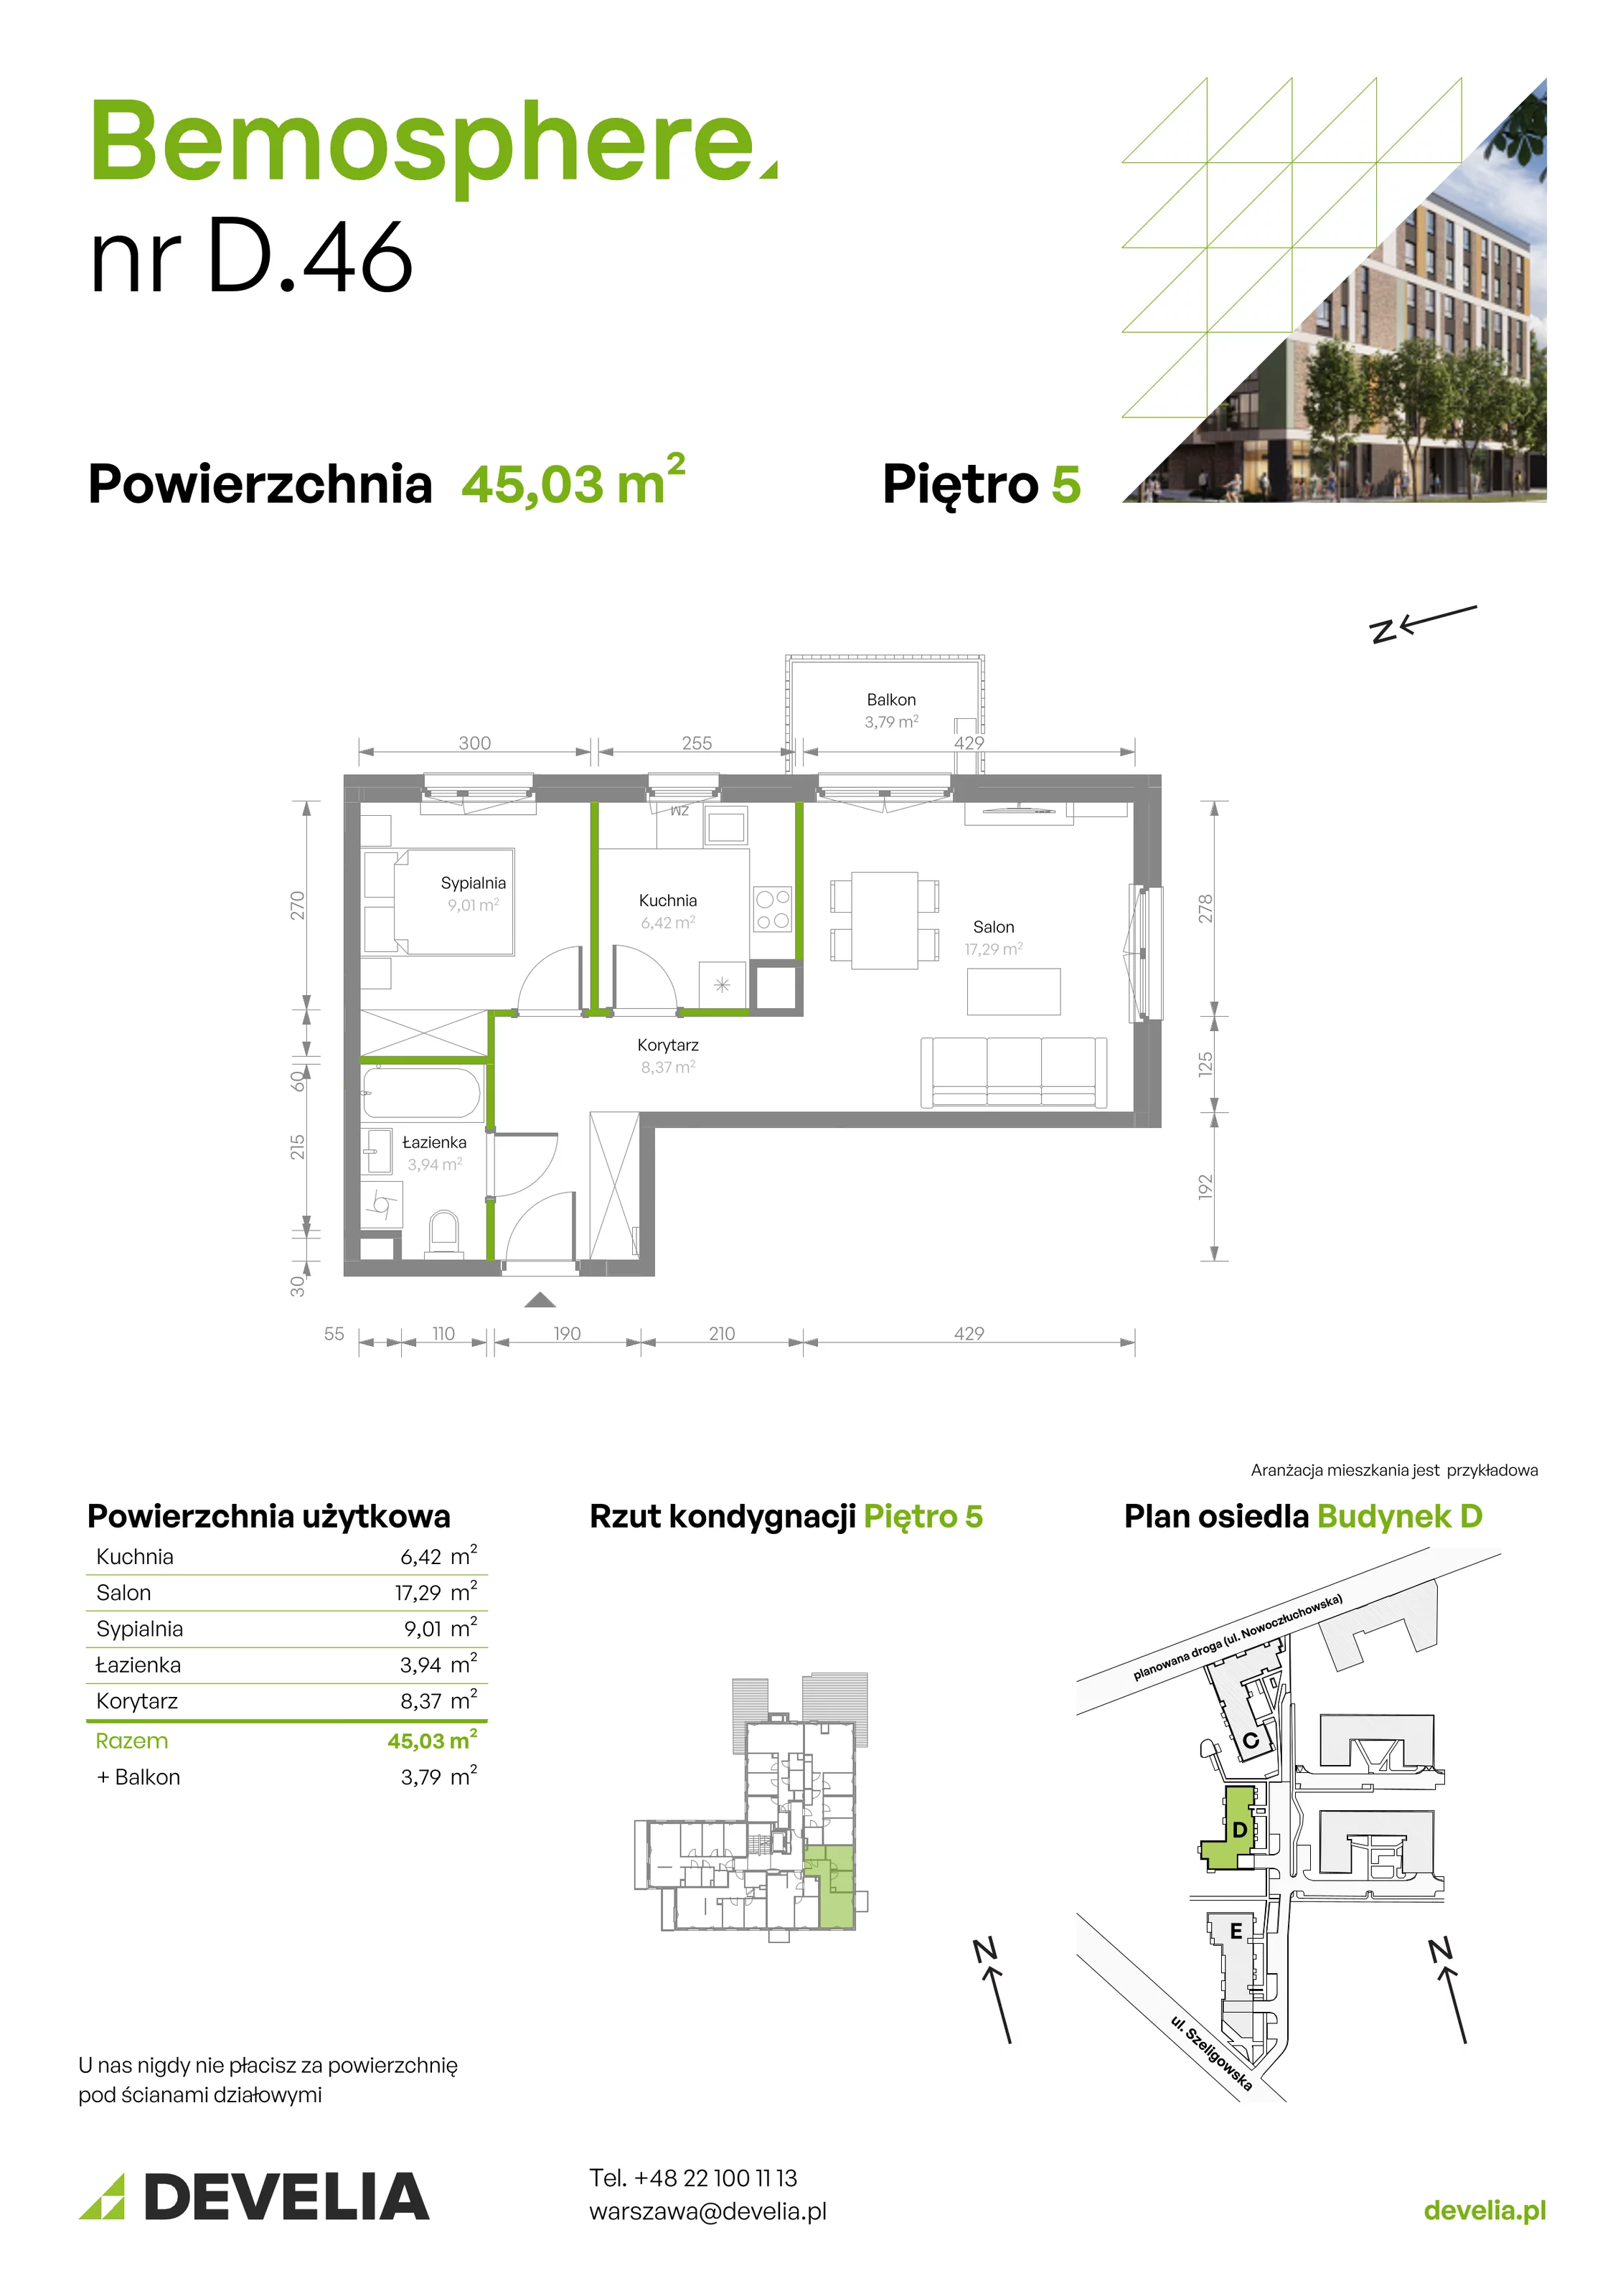 Mieszkanie 45,03 m², piętro 5, oferta nr D/046, Bemosphere, Warszawa, Bemowo, Chrzanów, ul. Szeligowska 24